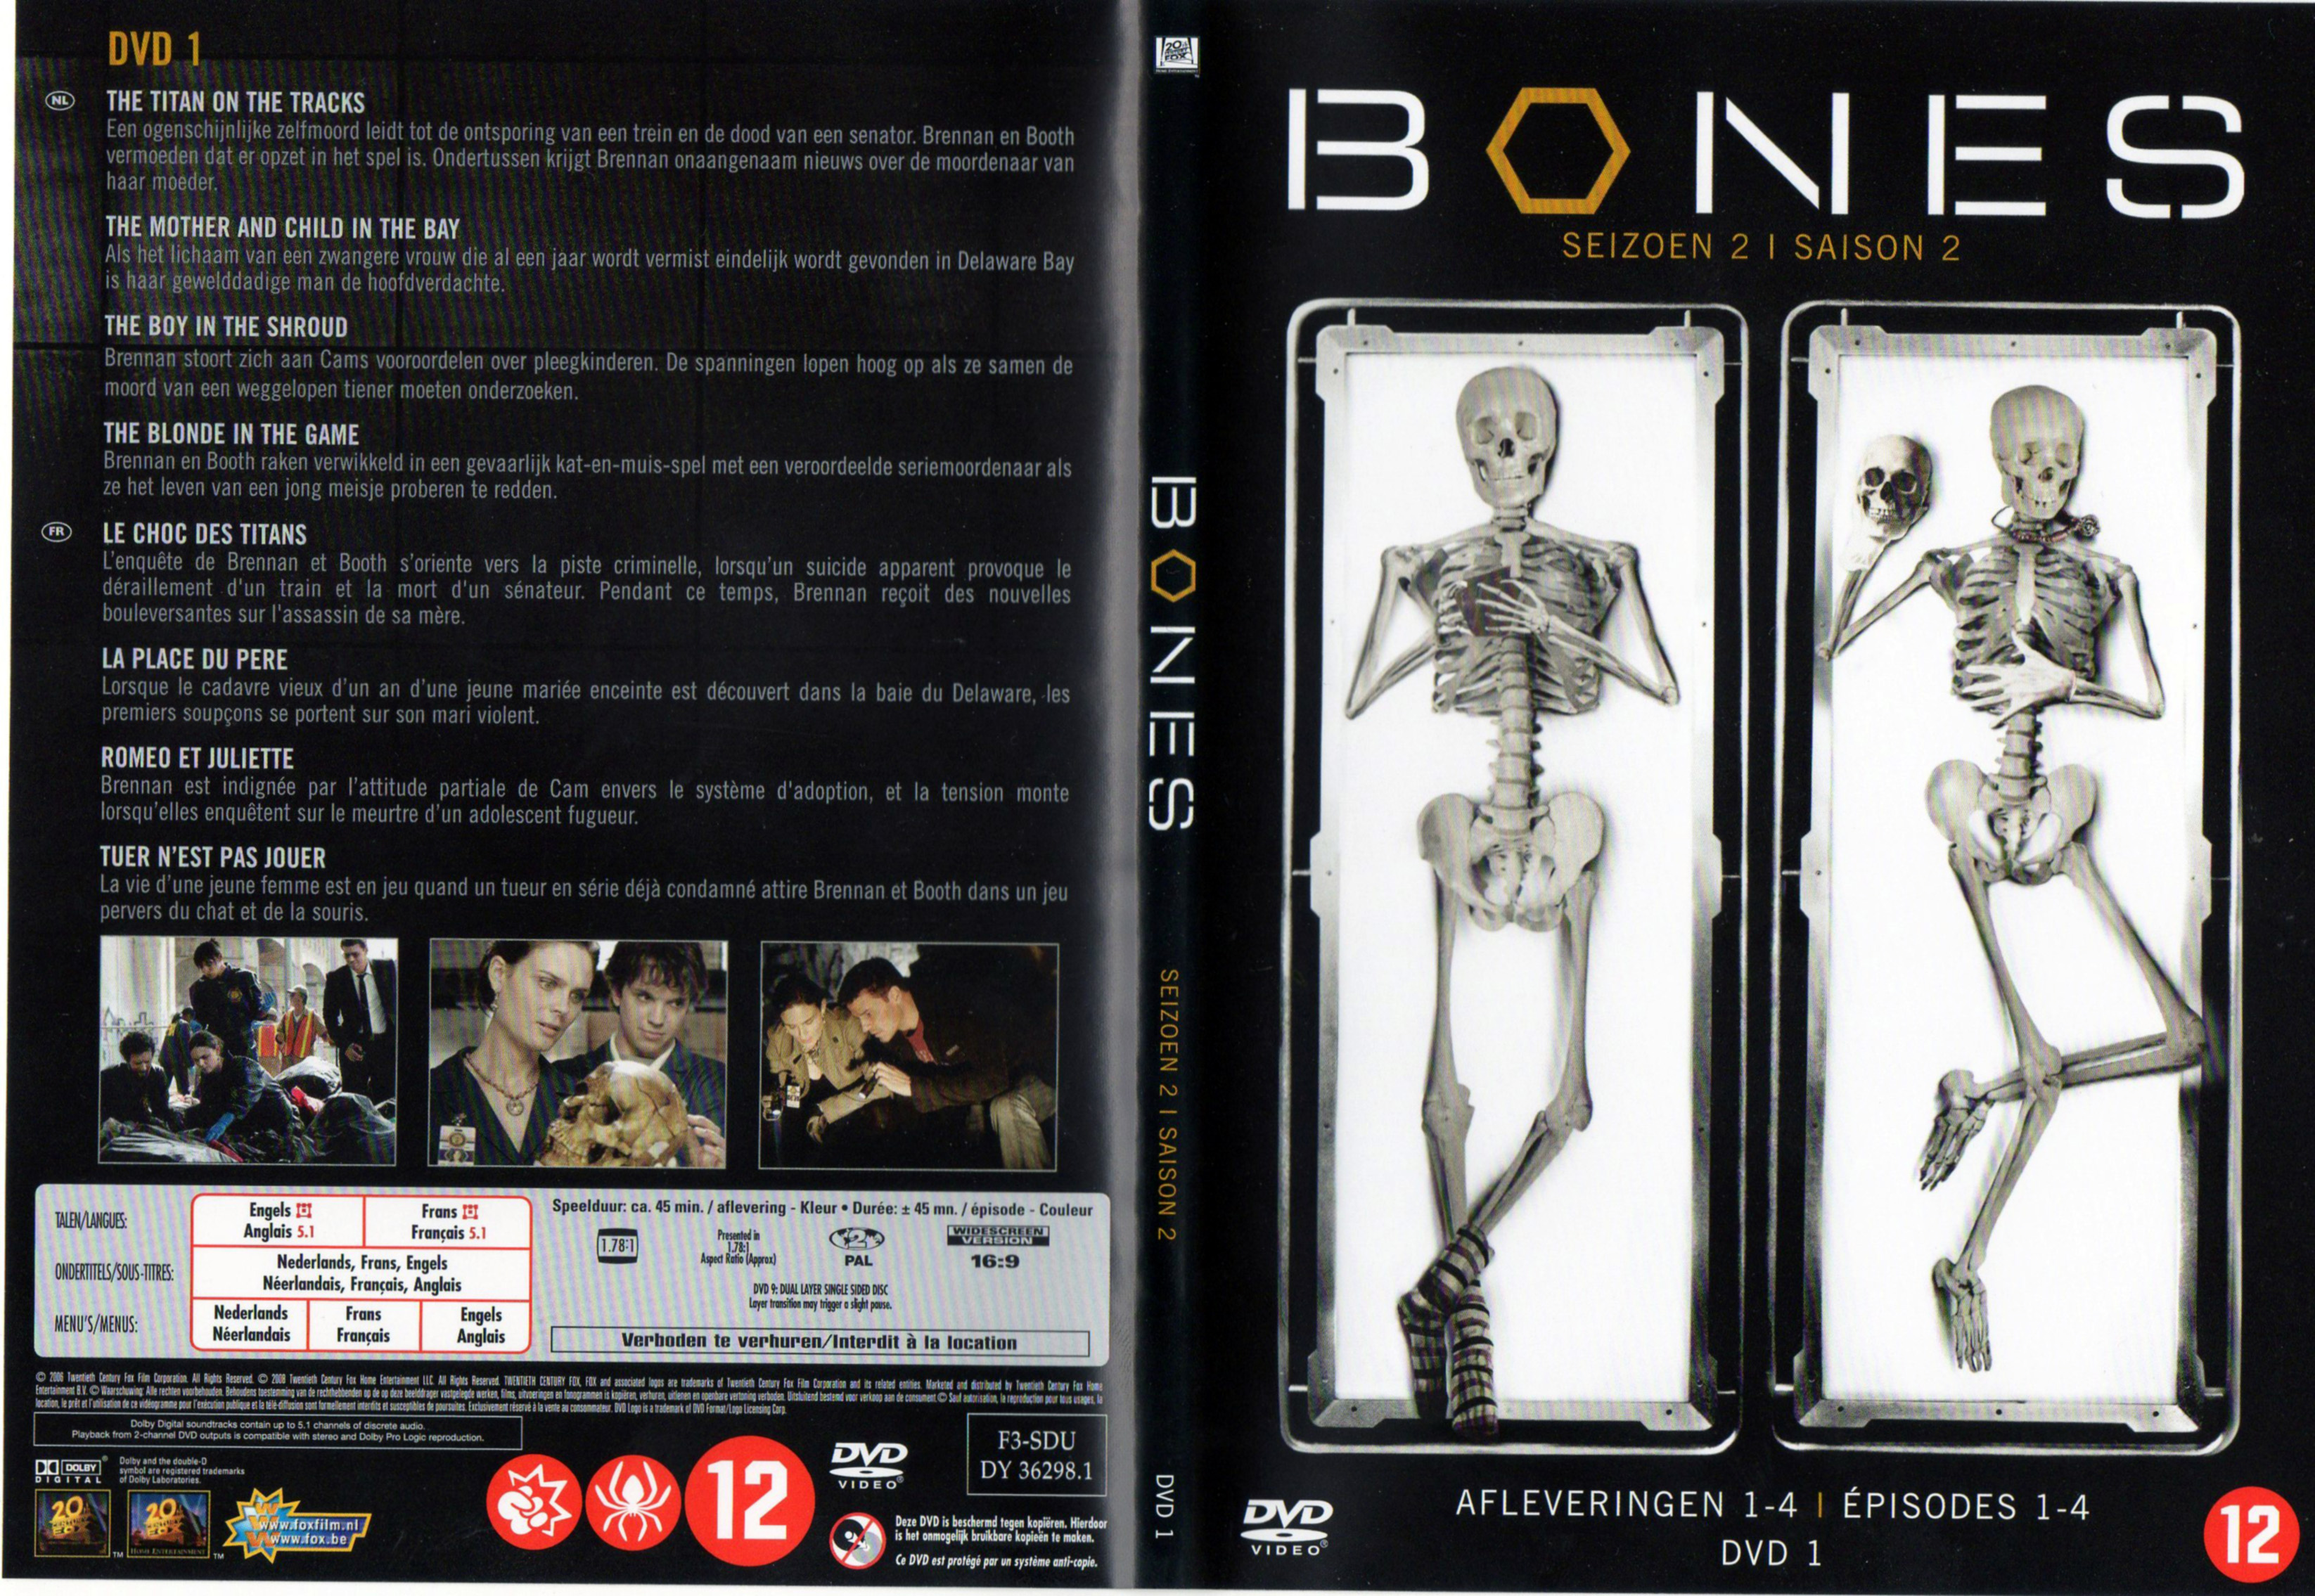 Jaquette DVD Bones Saison 2 DVD 1 v2